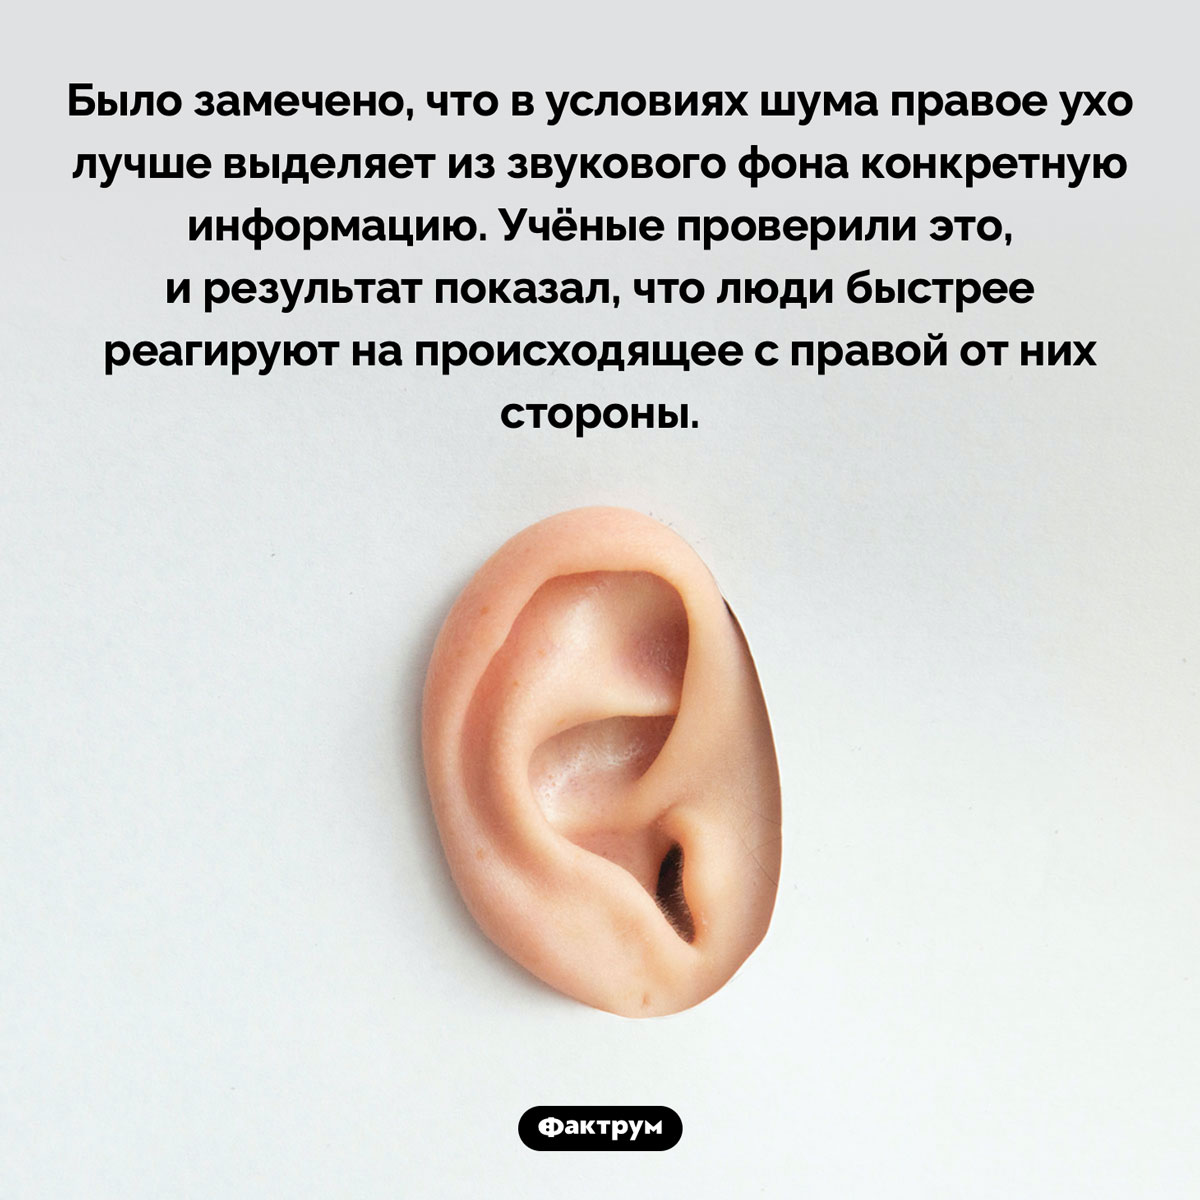 Правое ухо человека реагирует быстрее левого. Было замечено, что в условиях шума правое ухо лучше выделяет из звукового фона конкретную информацию. Учёные проверили это, и результат показал, что люди быстрее реагируют на происходящее с правой от них стороны.